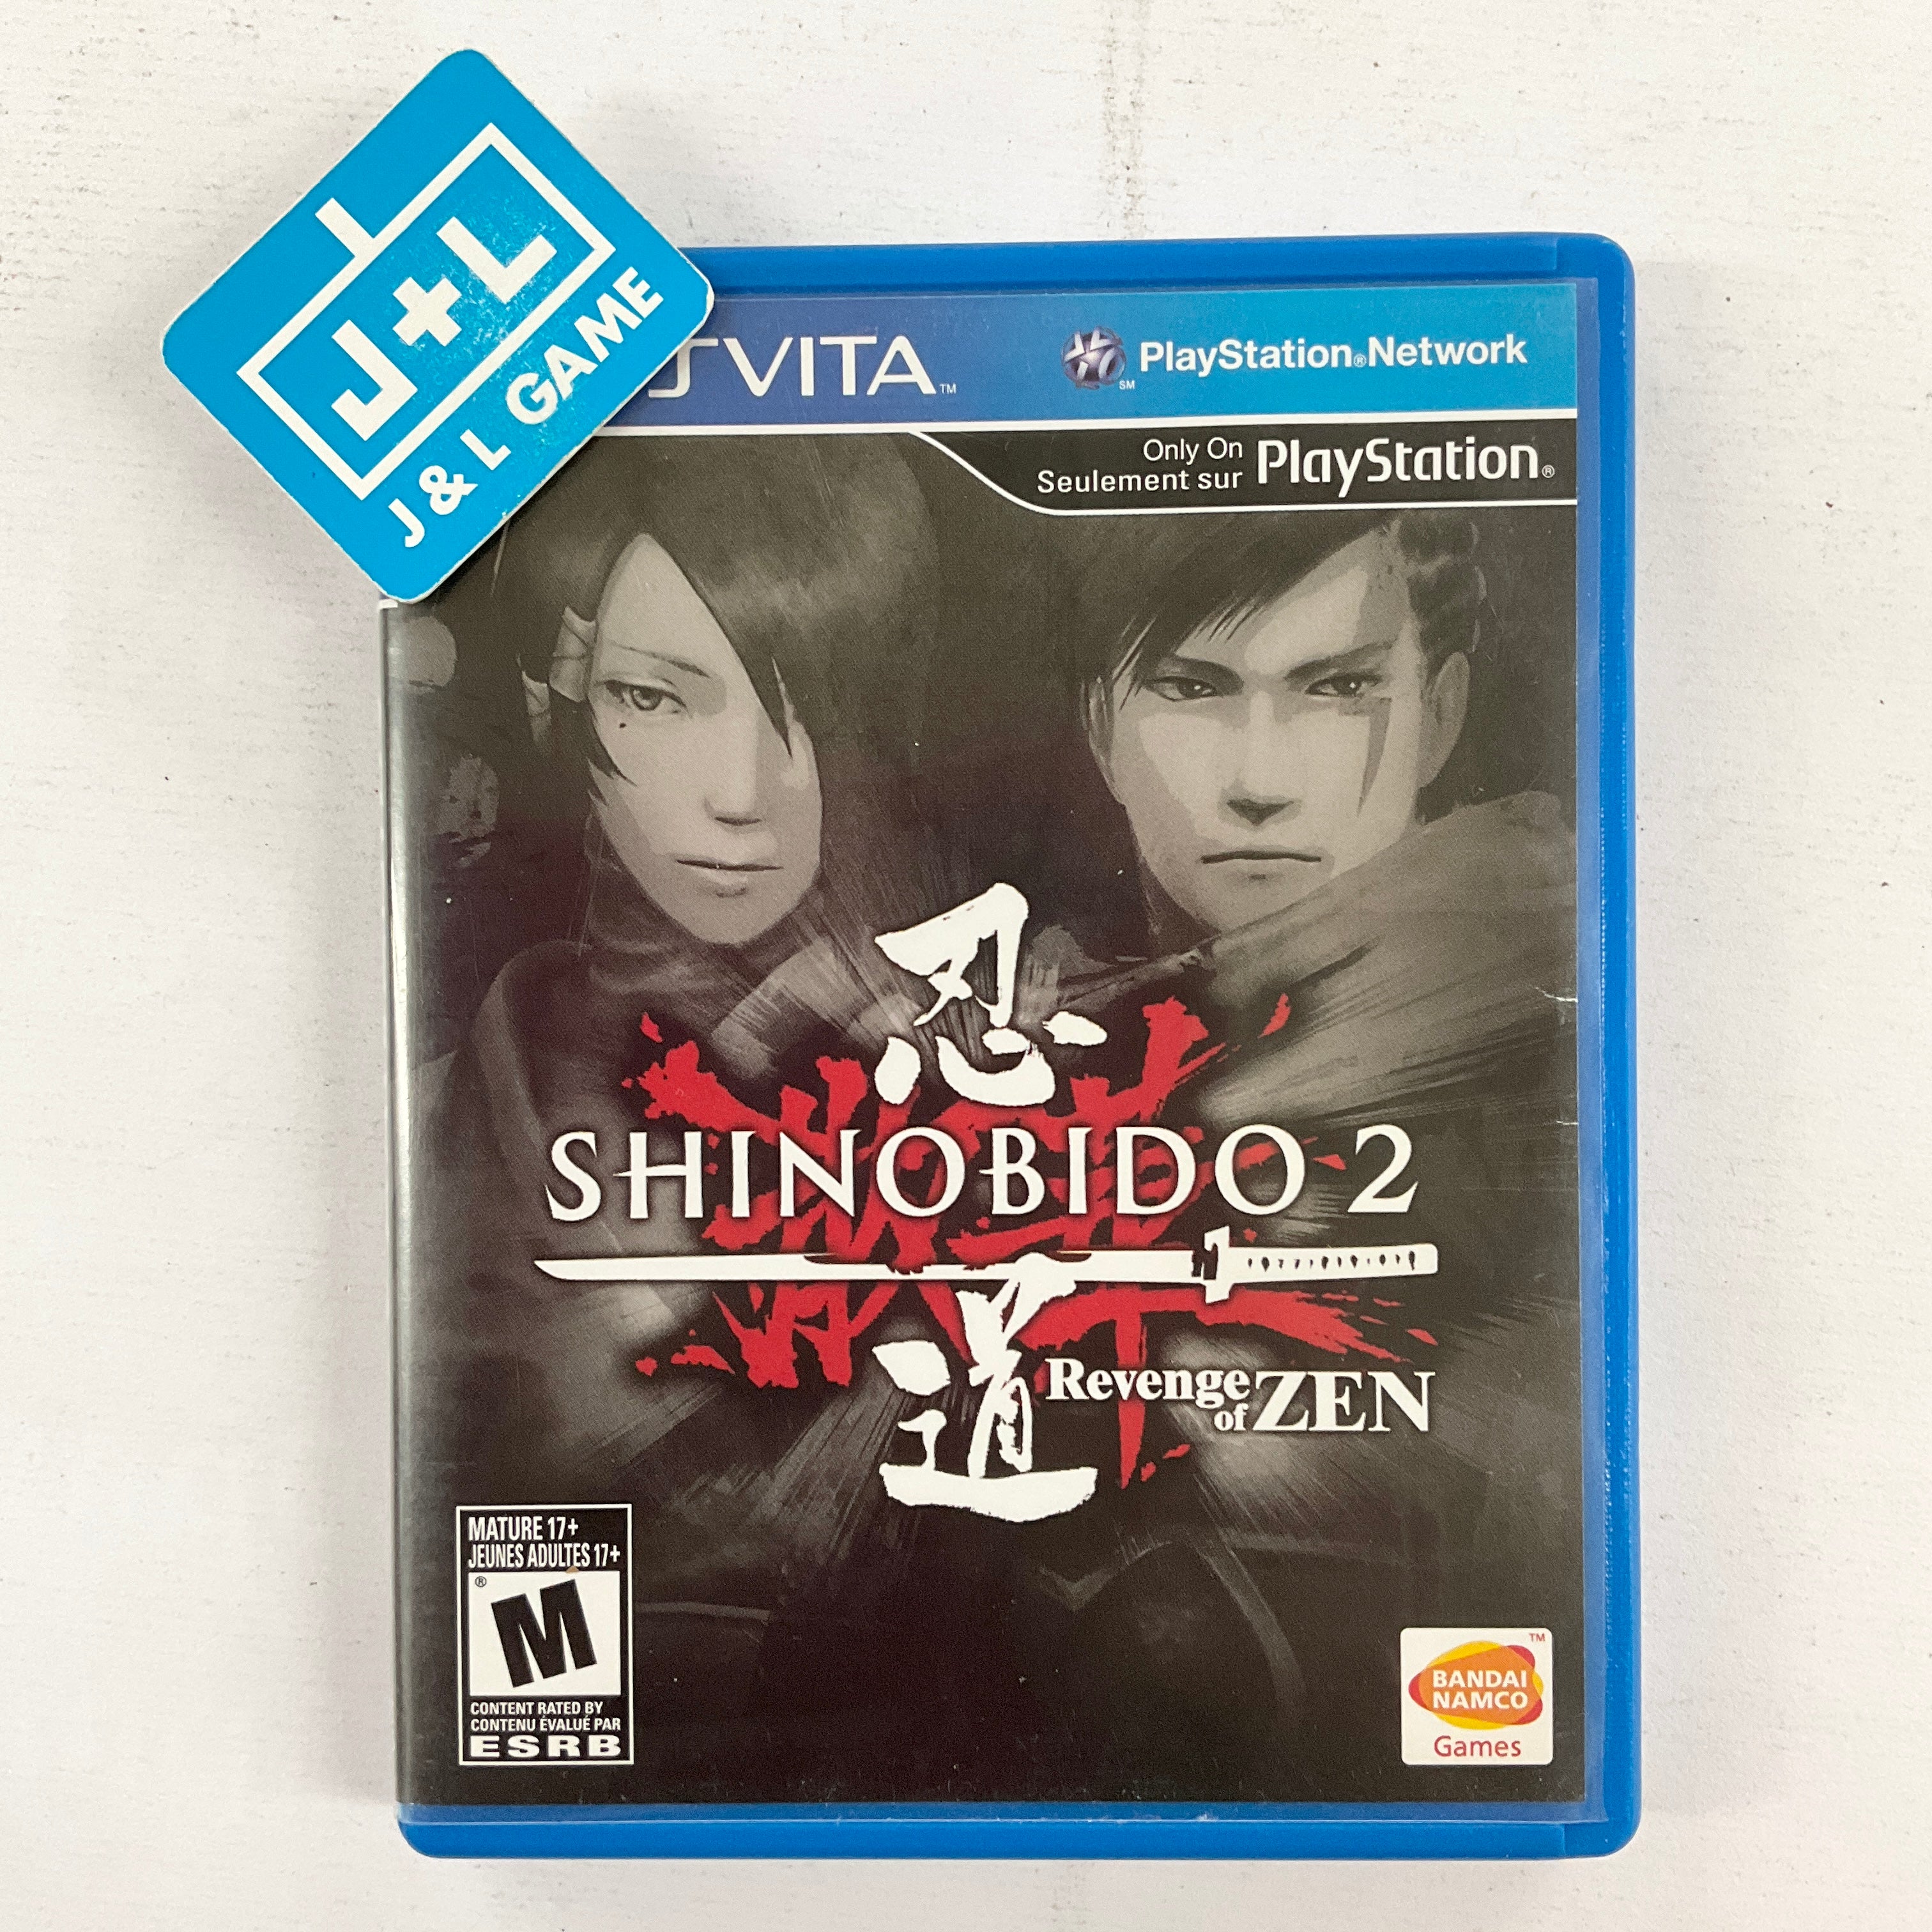 Shinobido 2: Revenge of Zen - (PSV) PlayStation Vita [Pre-Owned]